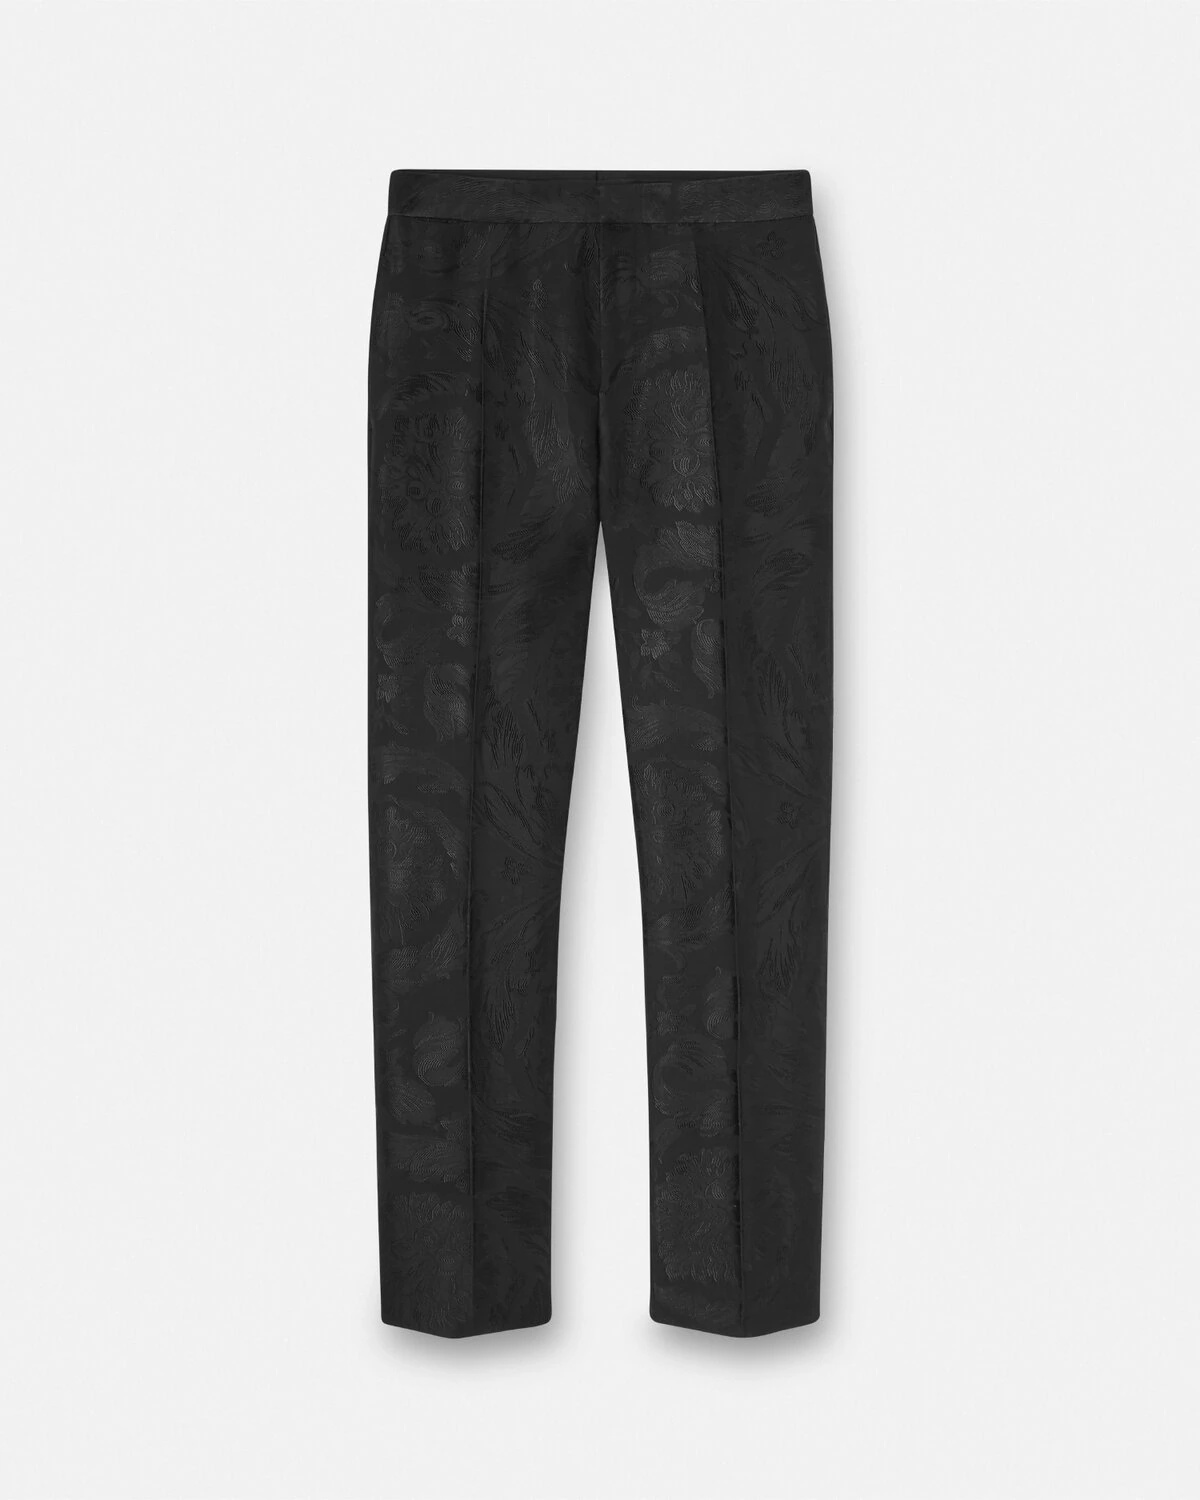 Barocco Jacquard Formal Pants - 1